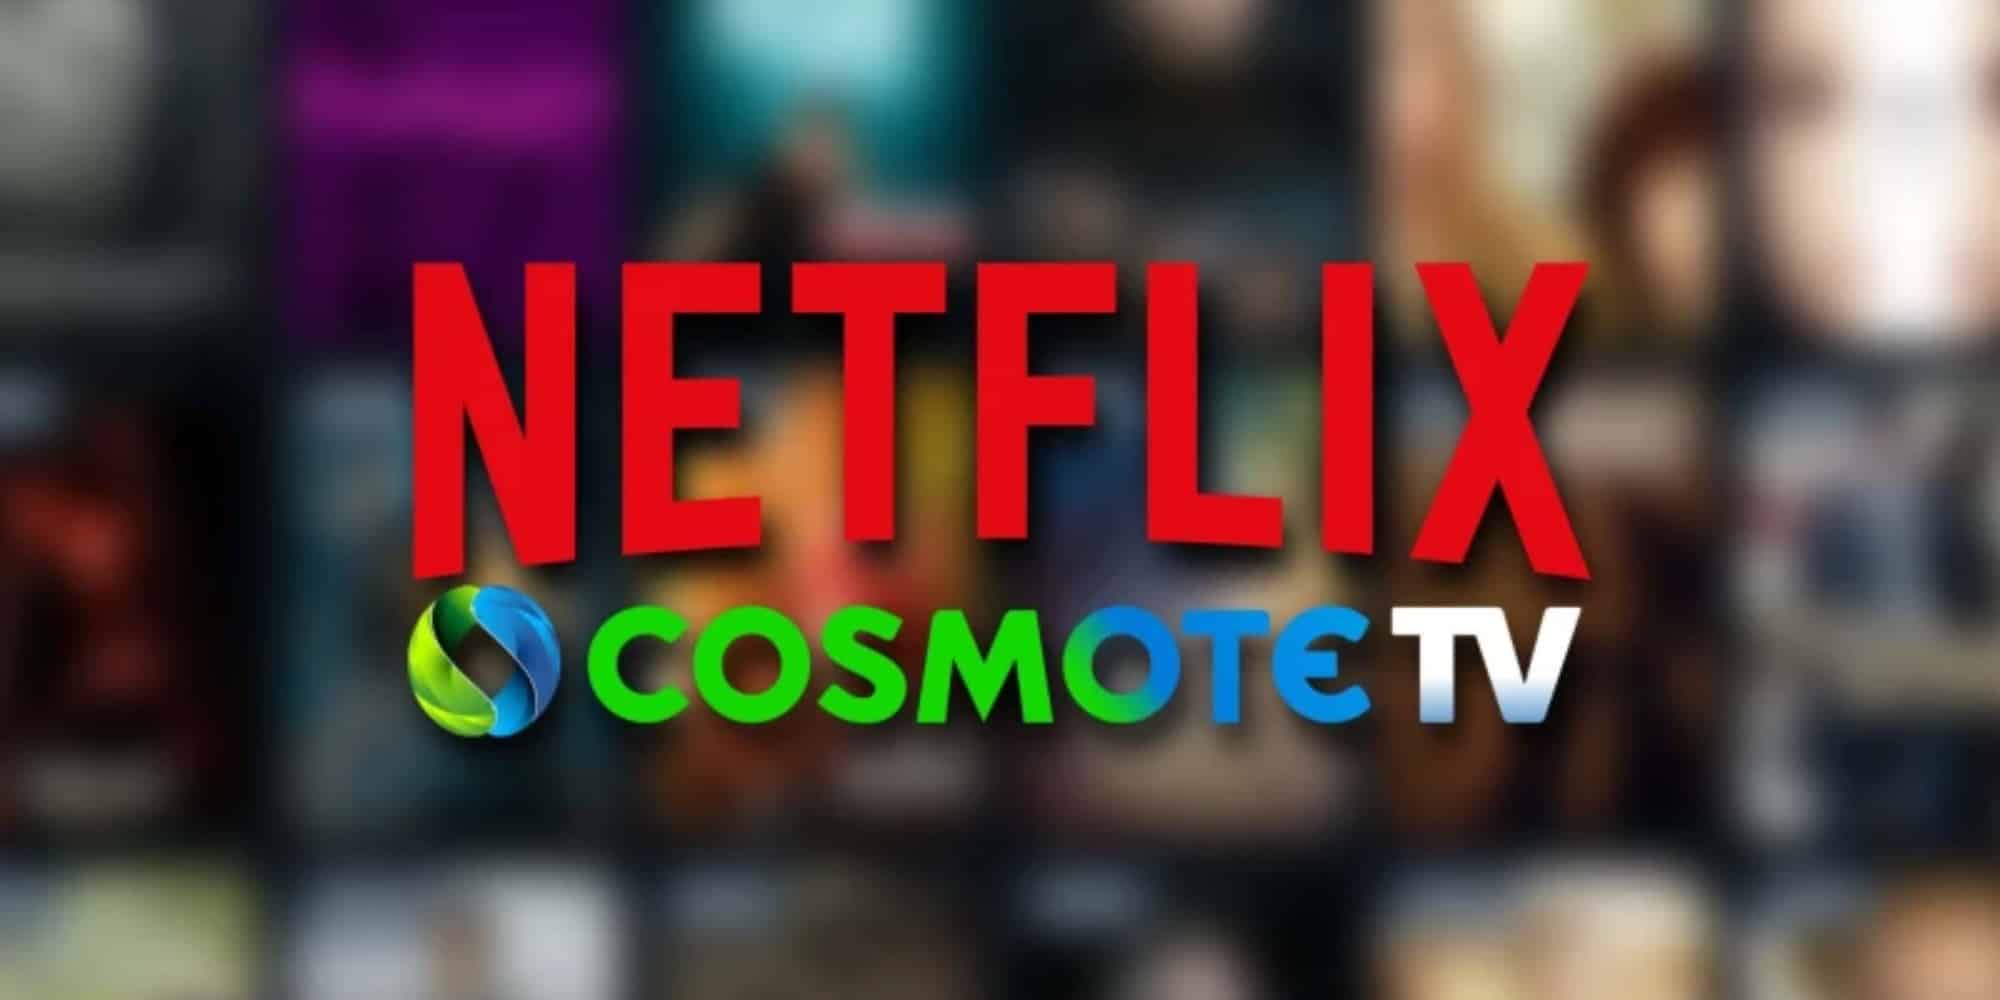 Σύμπραξη Netflix και Cosmote TV